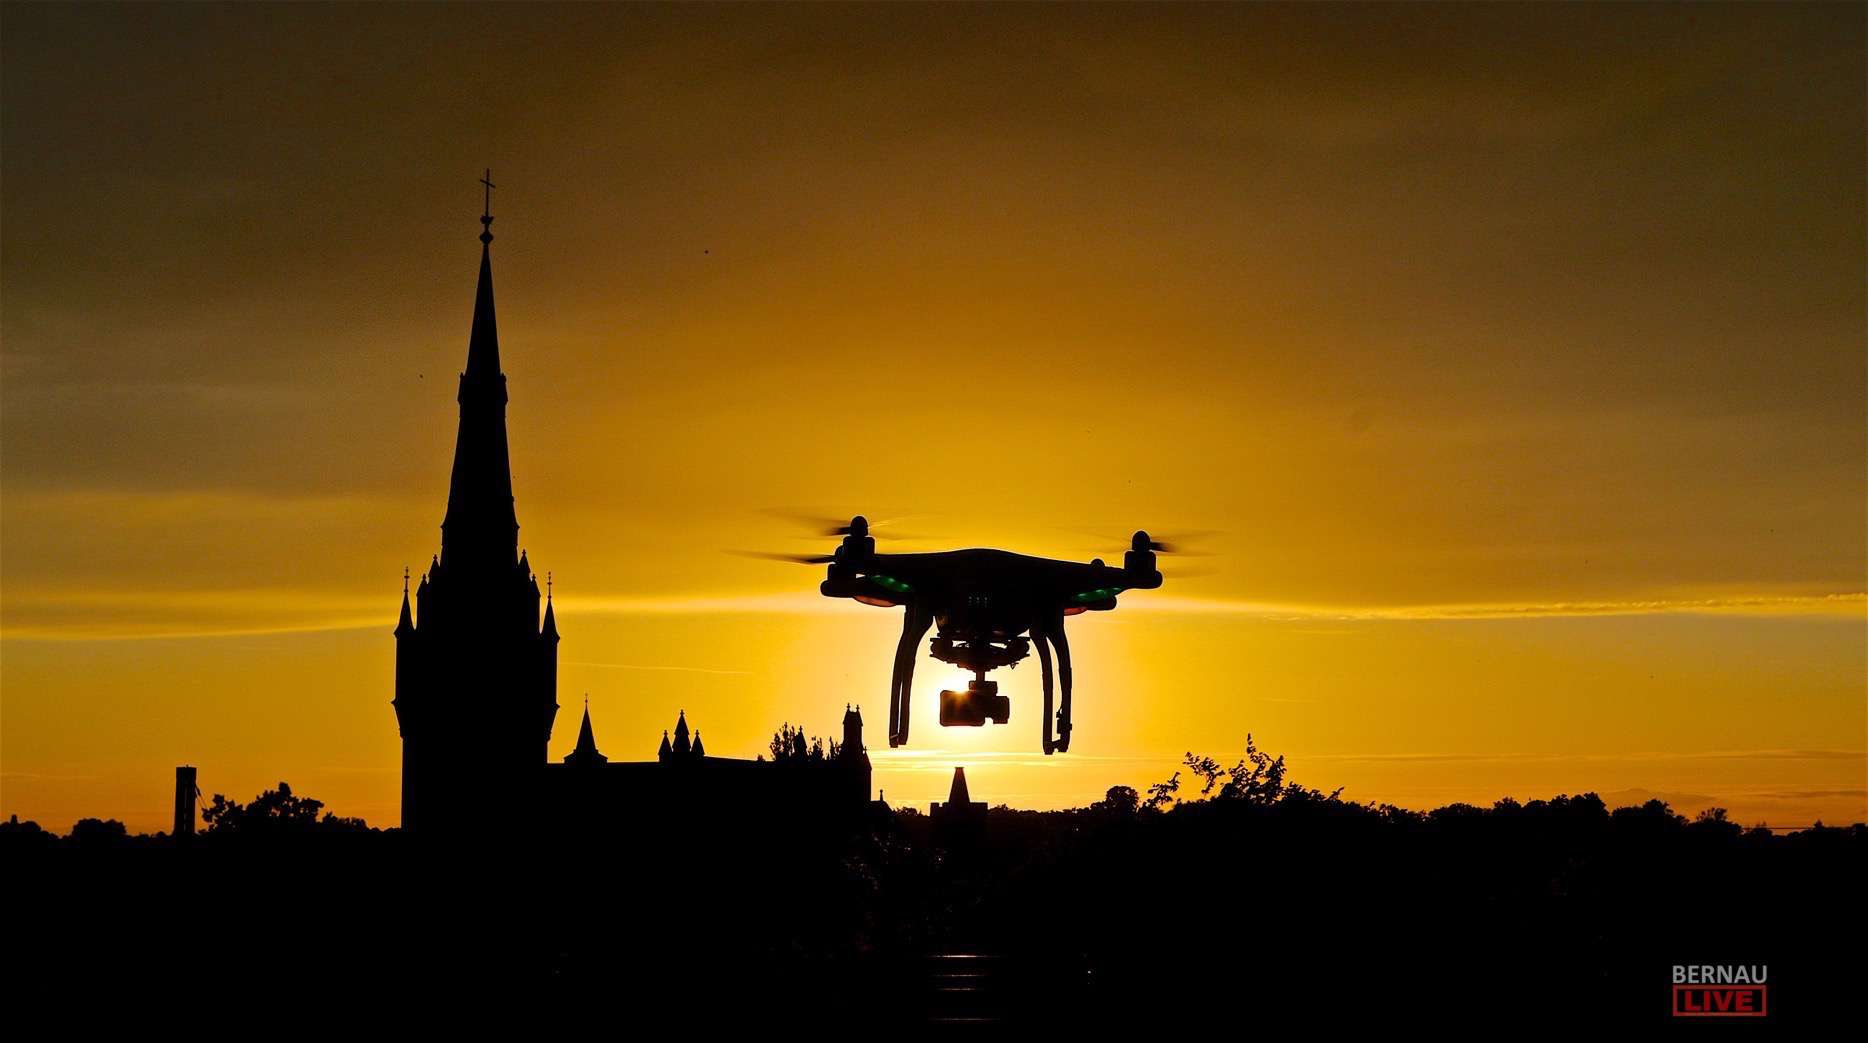 Bernau: Noch laufende Drohne gefunden - wer vermisst seine?